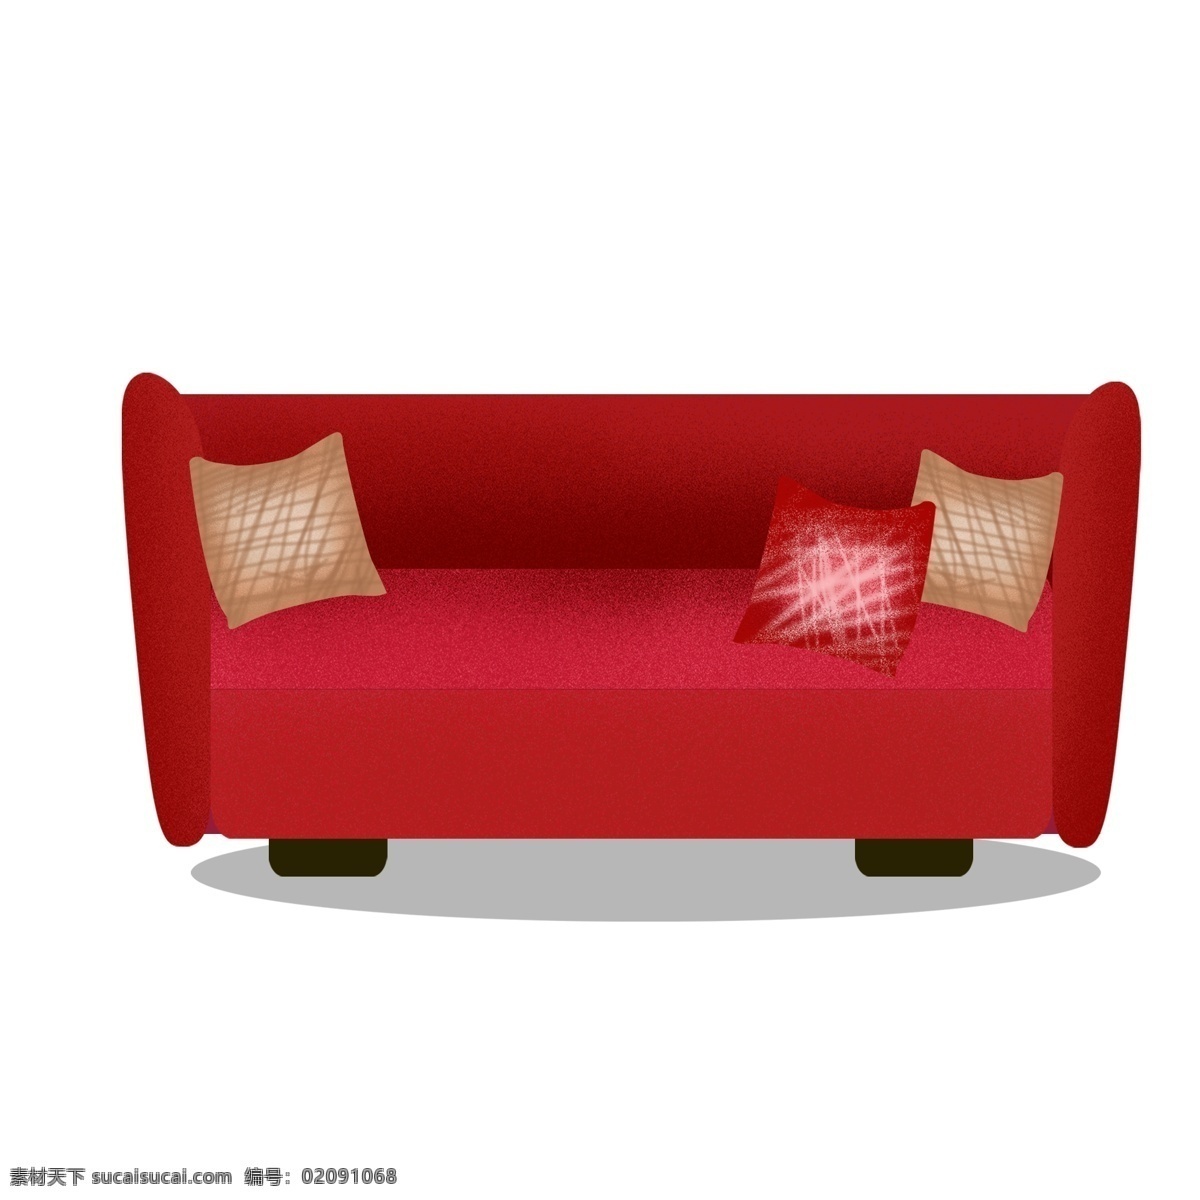 红色 喜庆 沙发 元素 家居 简约 红色沙发 设计元素 手绘图案 元素设计 psd元素